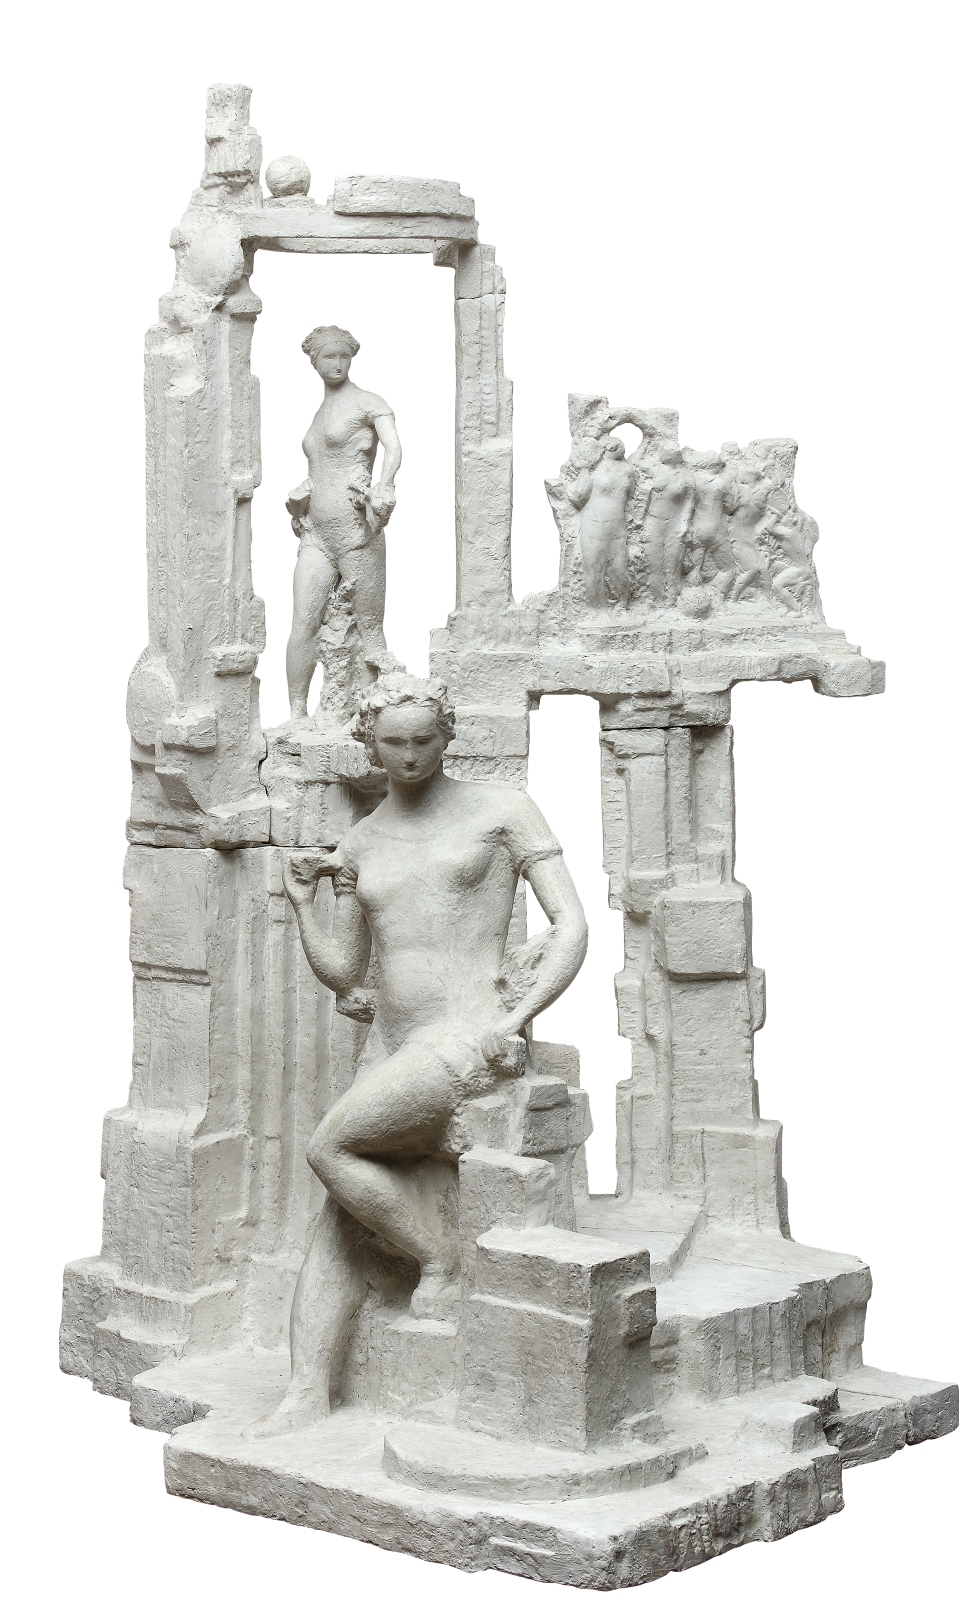 Физкультура. Фрагмент скульптурноархитектурной композиции «Посвящение Лукасу Кранаху». 1929–1933